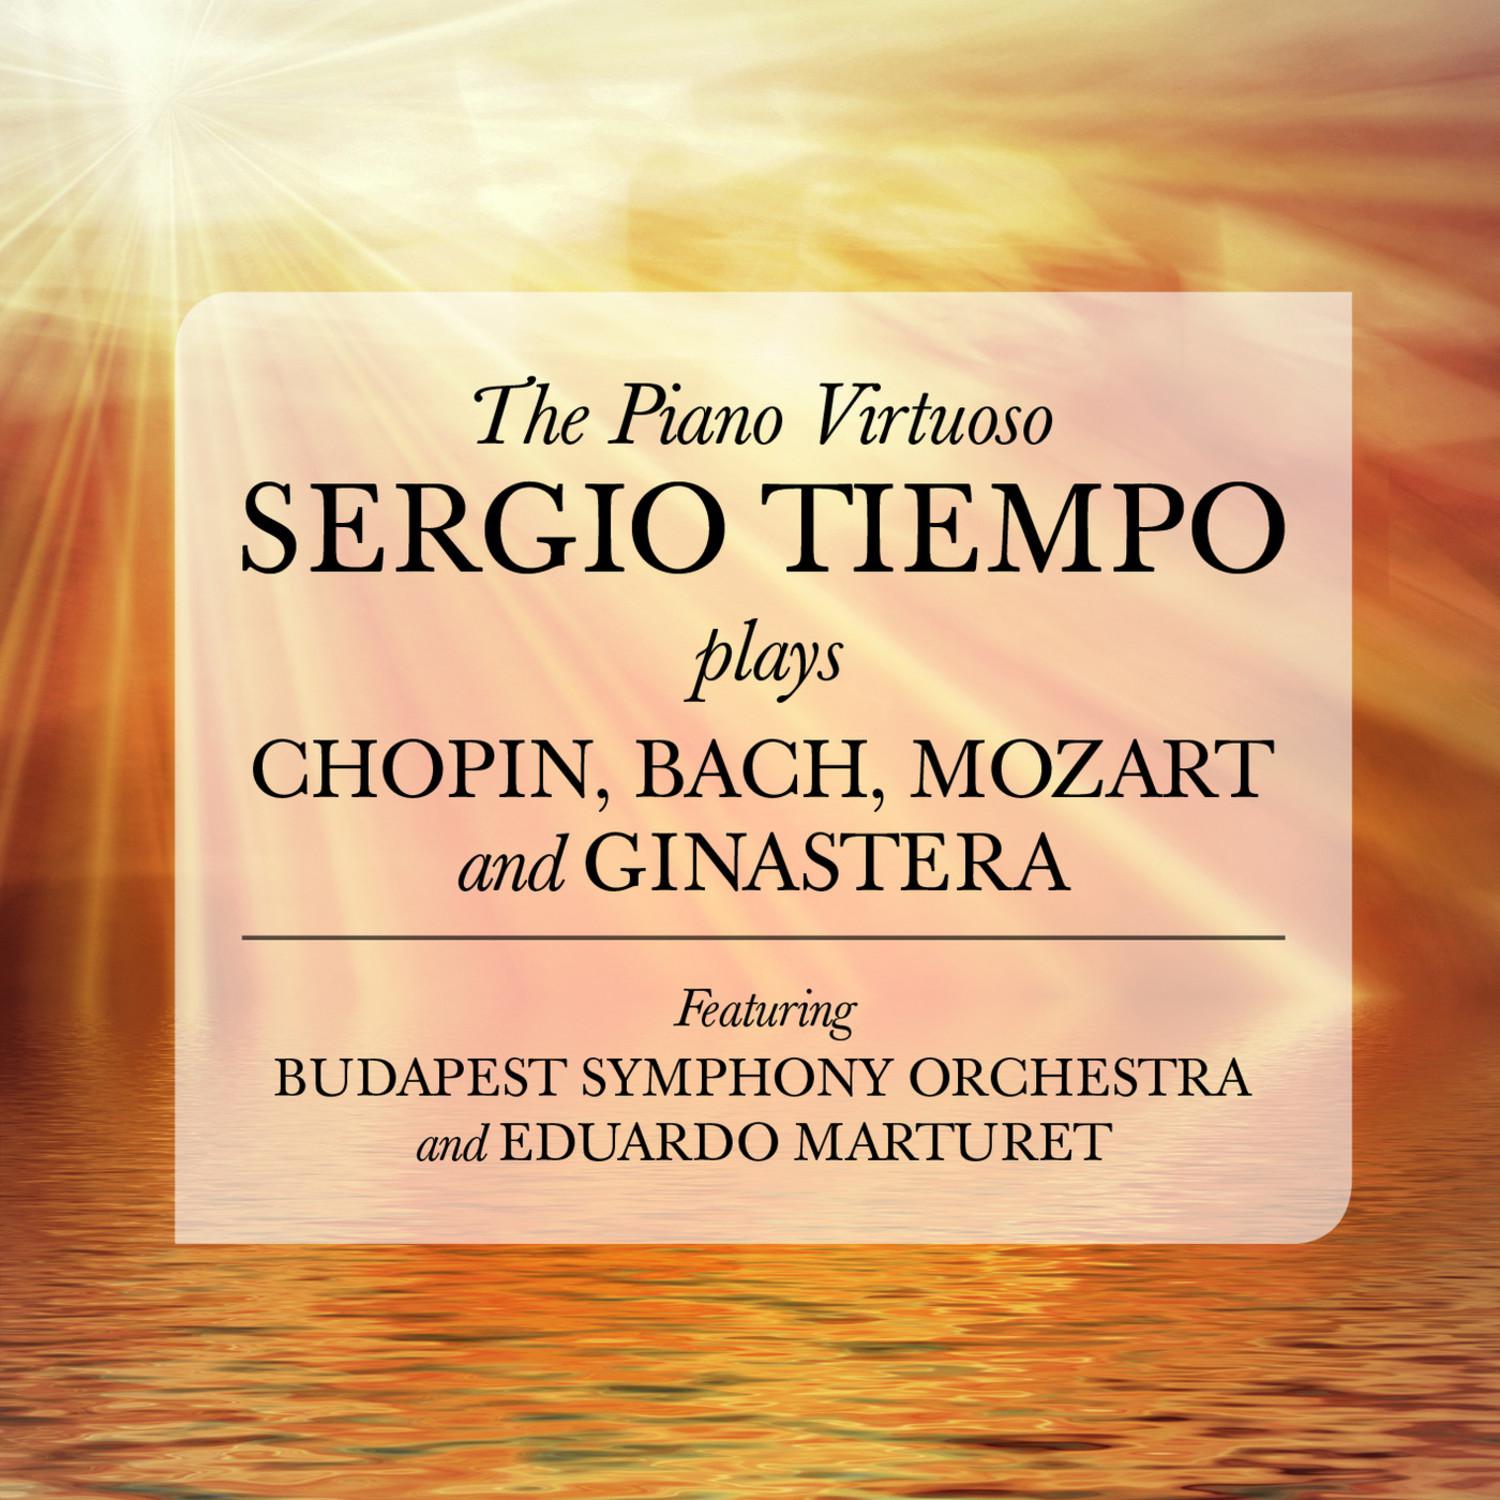 Concerto No. 1 in E Minor for Piano and Orchestra, Op. 11: I. Allegro maetoso